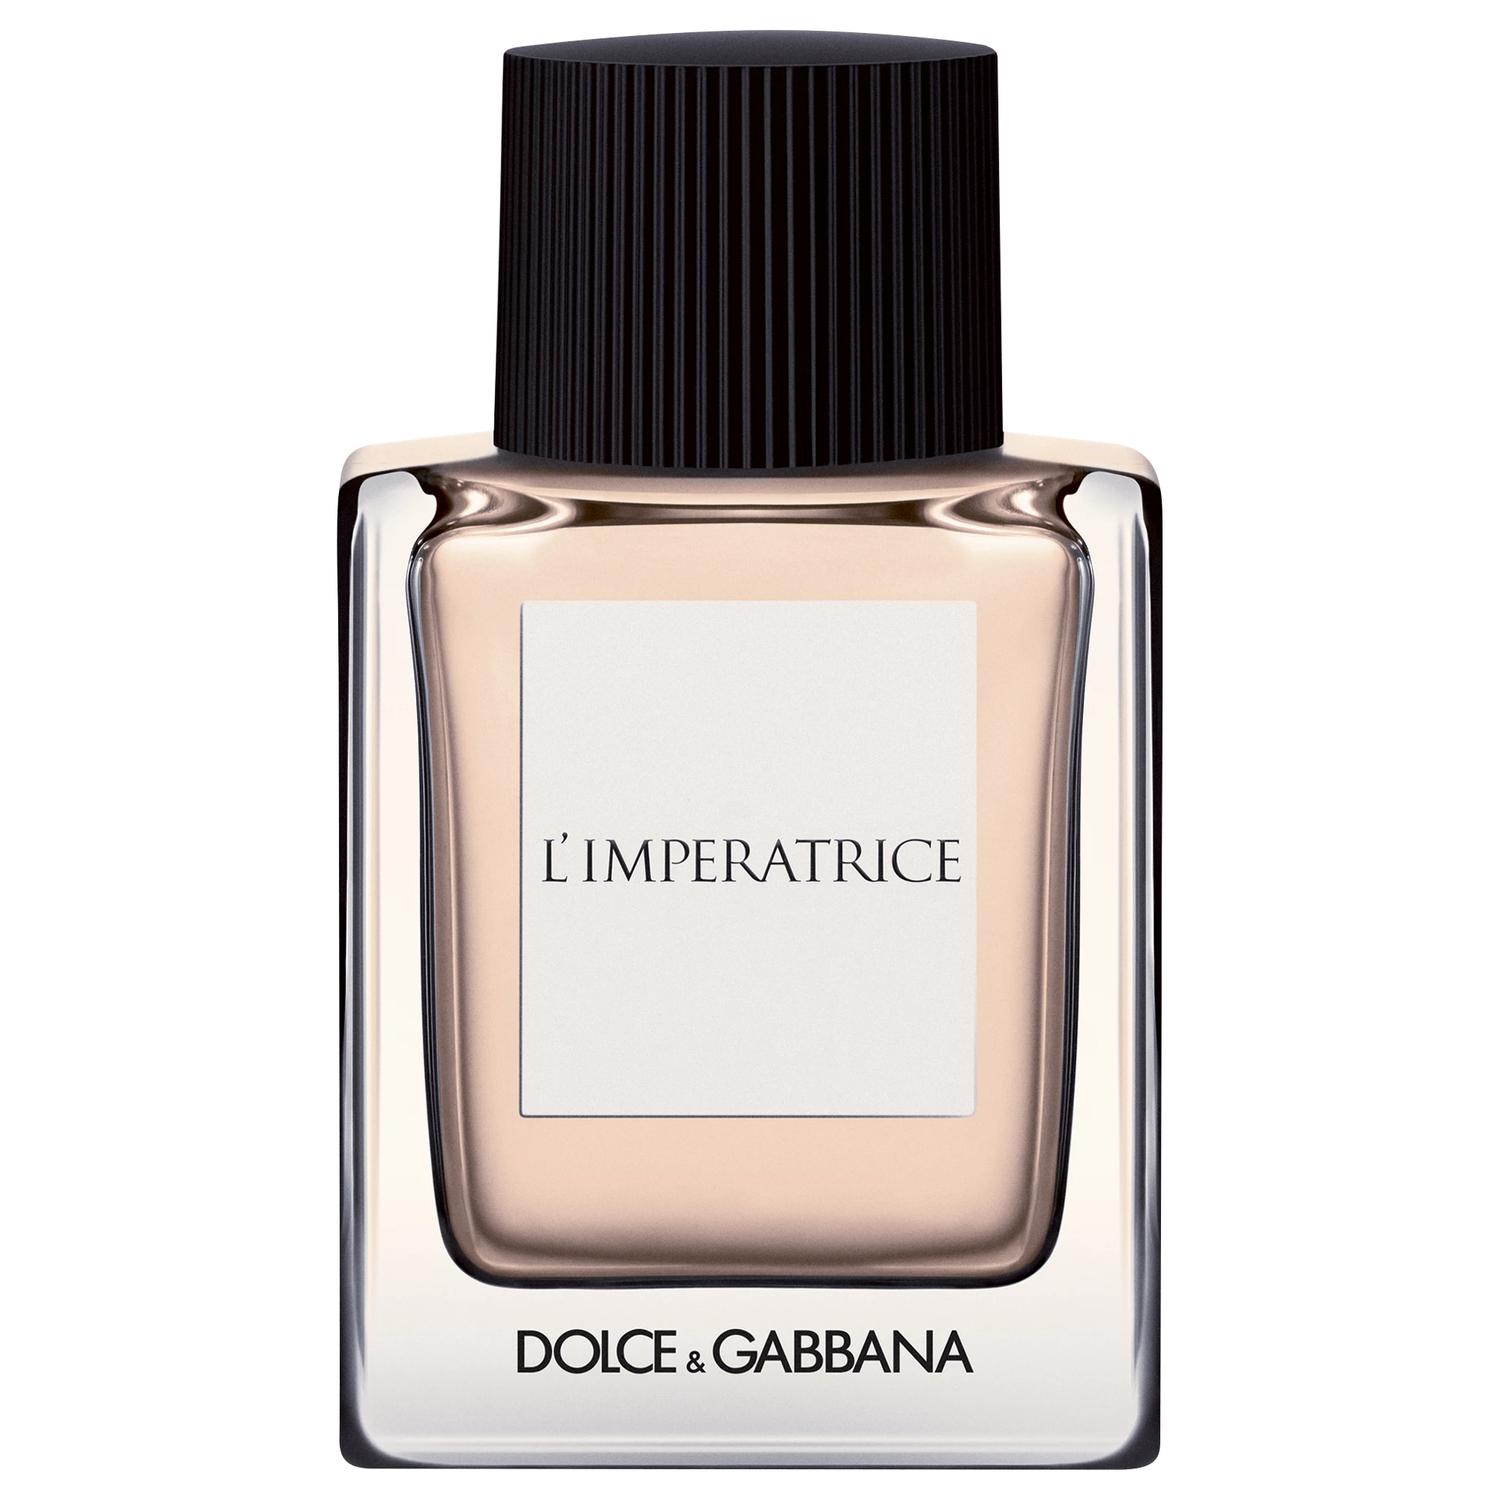 Dolce & Gabbana L